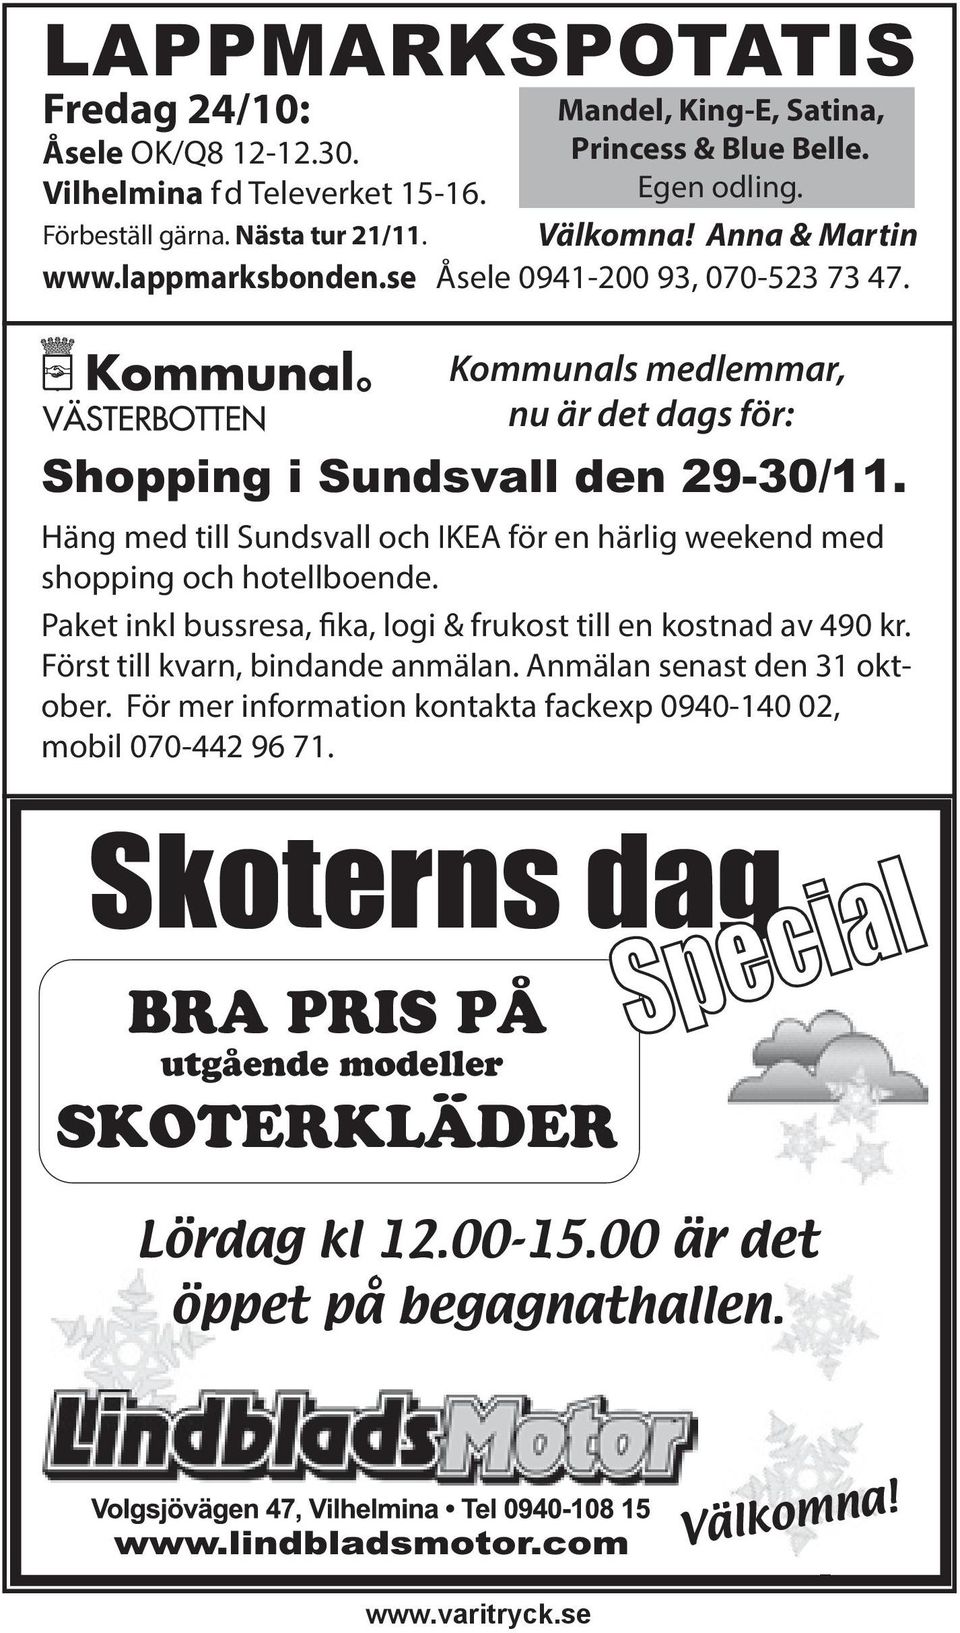 Häng med till Sundsvall och IKEA för en härlig weekend med shopping och hotellboende. Paket inkl bussresa, fika, logi & frukost till en kostnad av 490 kr. Först till kvarn, bindande anmälan.